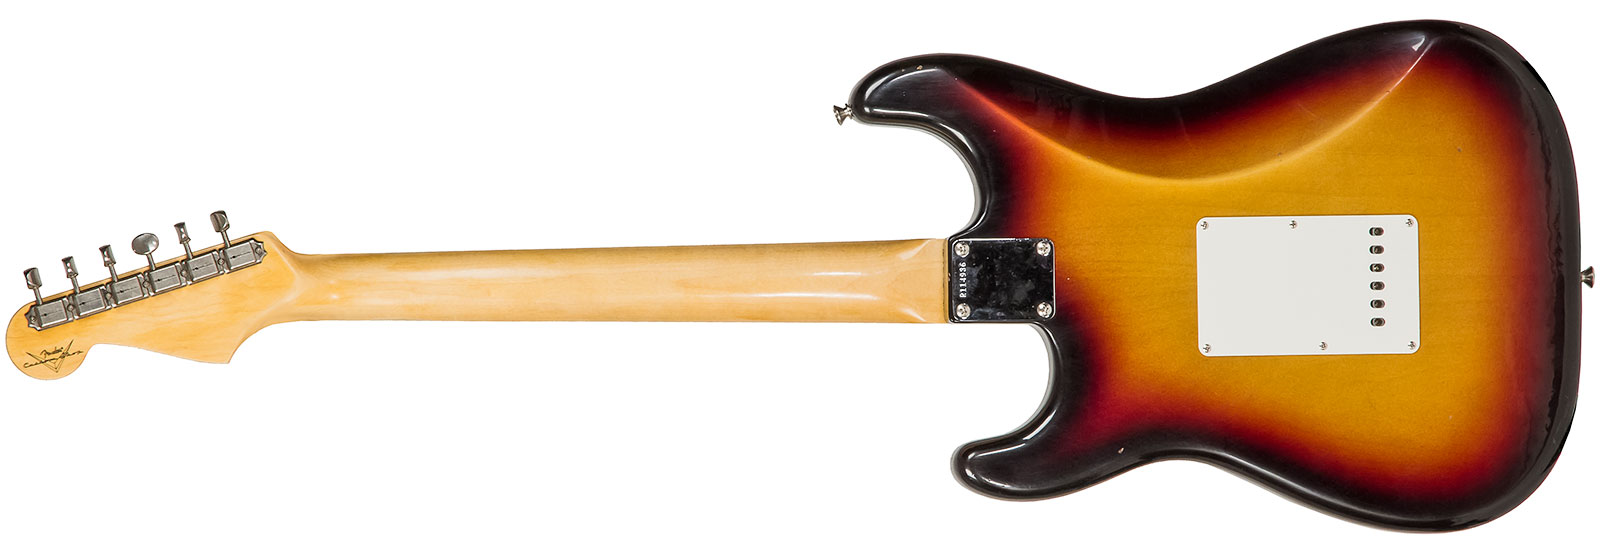 Fender Custom Shop Strat 1964 Rw #r114936 - Journeyman Relic 3-color Sunburst - Guitare Électrique Forme Str - Variation 1